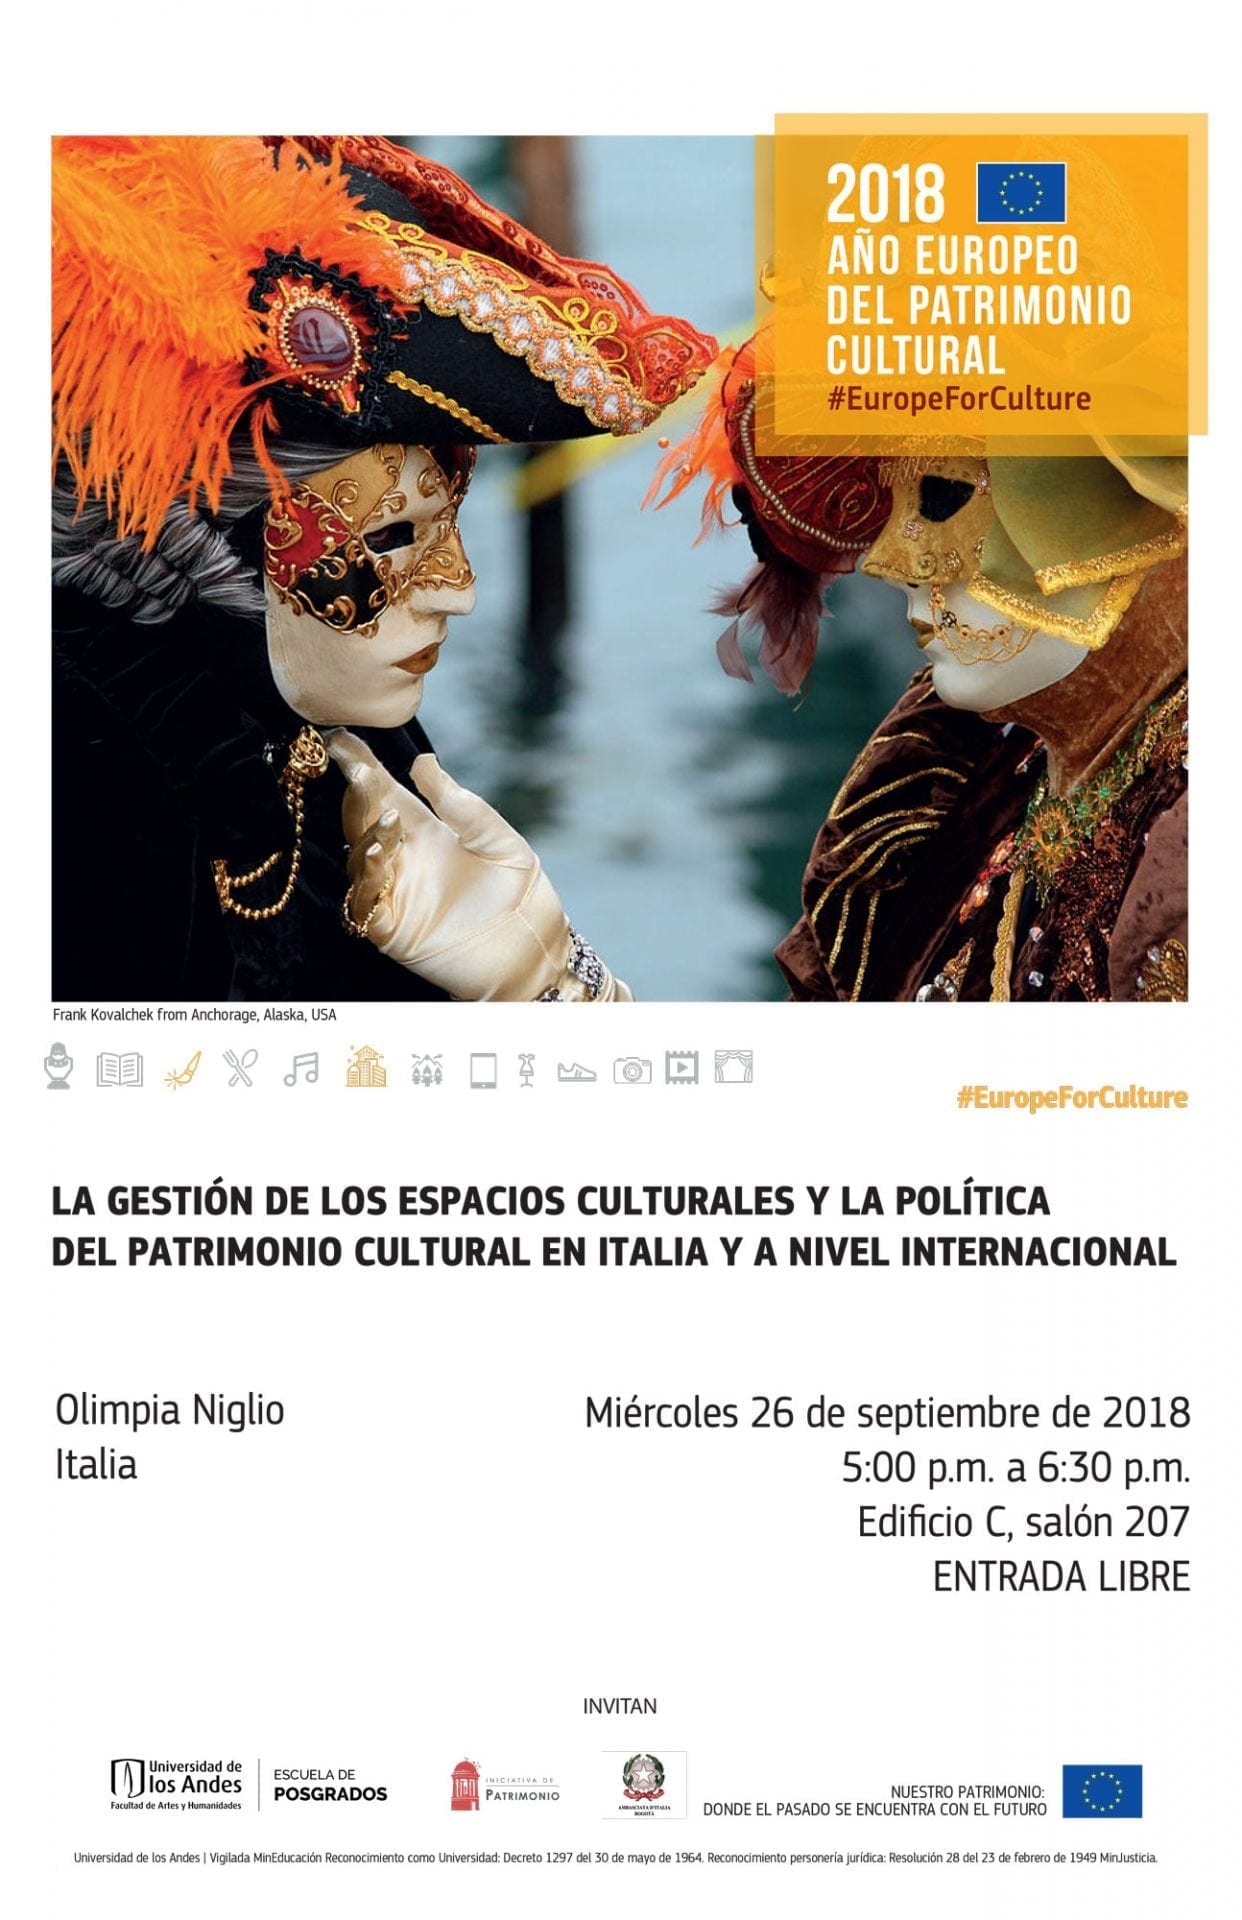 La gestión de los espacios culturales y la política del patrimonio cultural en Italia y a nivel internacional